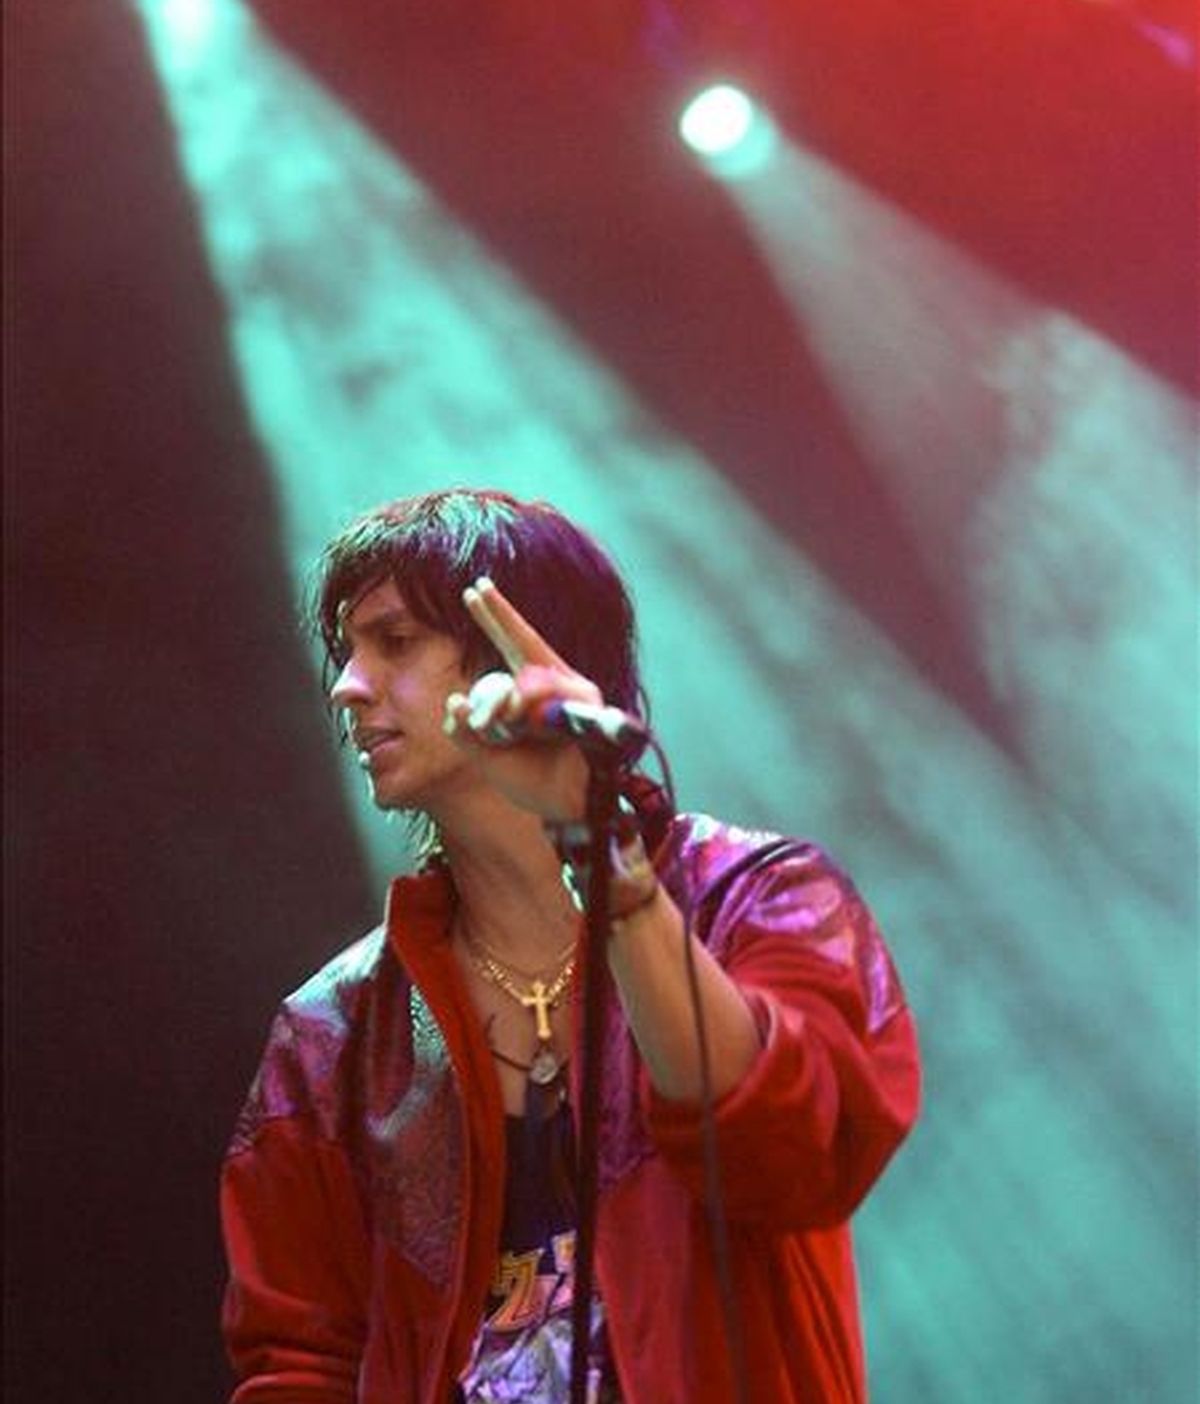 Julian Casablancas, vocalista del grupo estadounidense de inde rock The Strokes, durante su actuación esta noche en la segunda jornada de la XVI Edición del Festival Internacional de Benicássim, que se celebra en la localidad castellonense. EFE